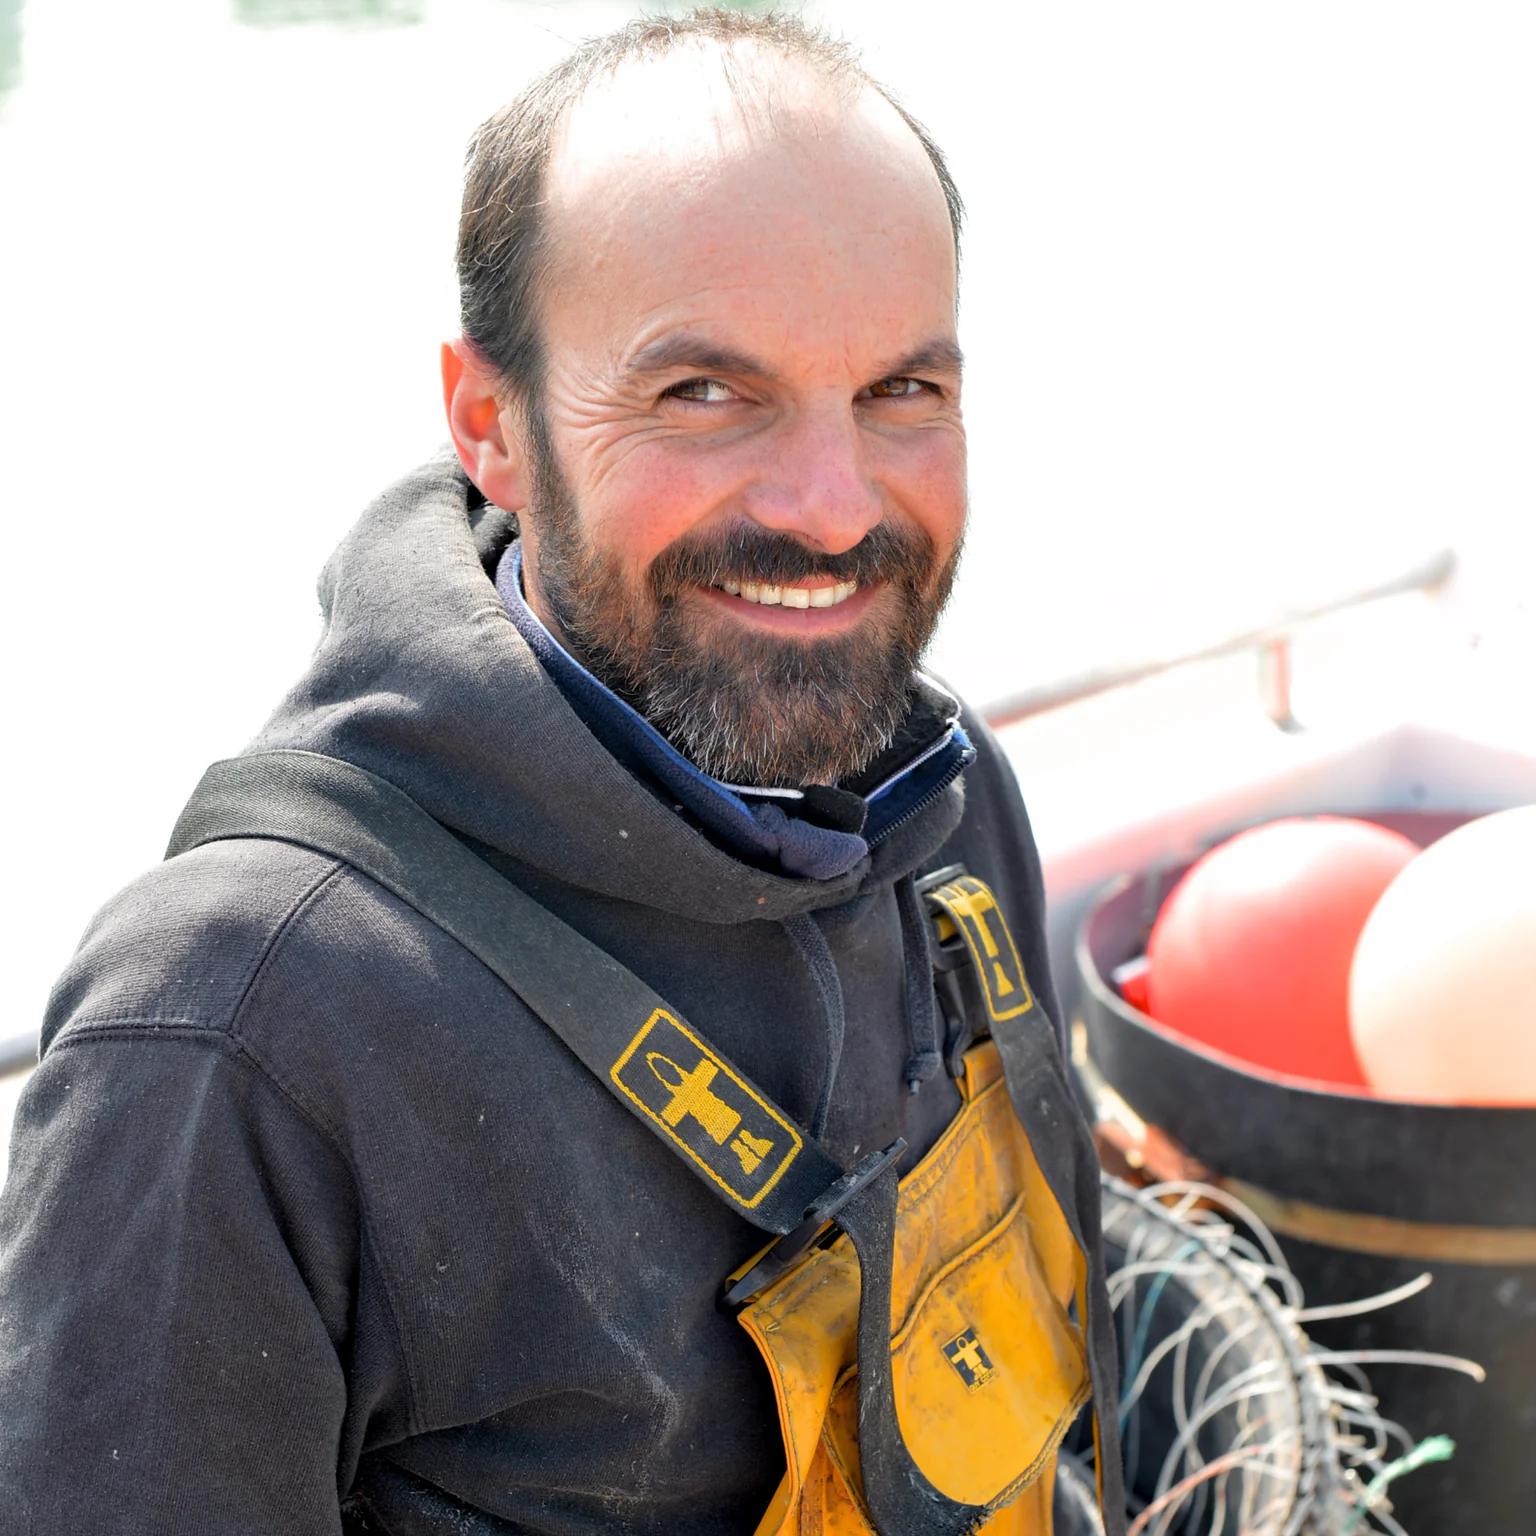  Anthony Guenec est un guide de pêche renomme et un des tout premiers pêcheurs du réseau Poiscaille.